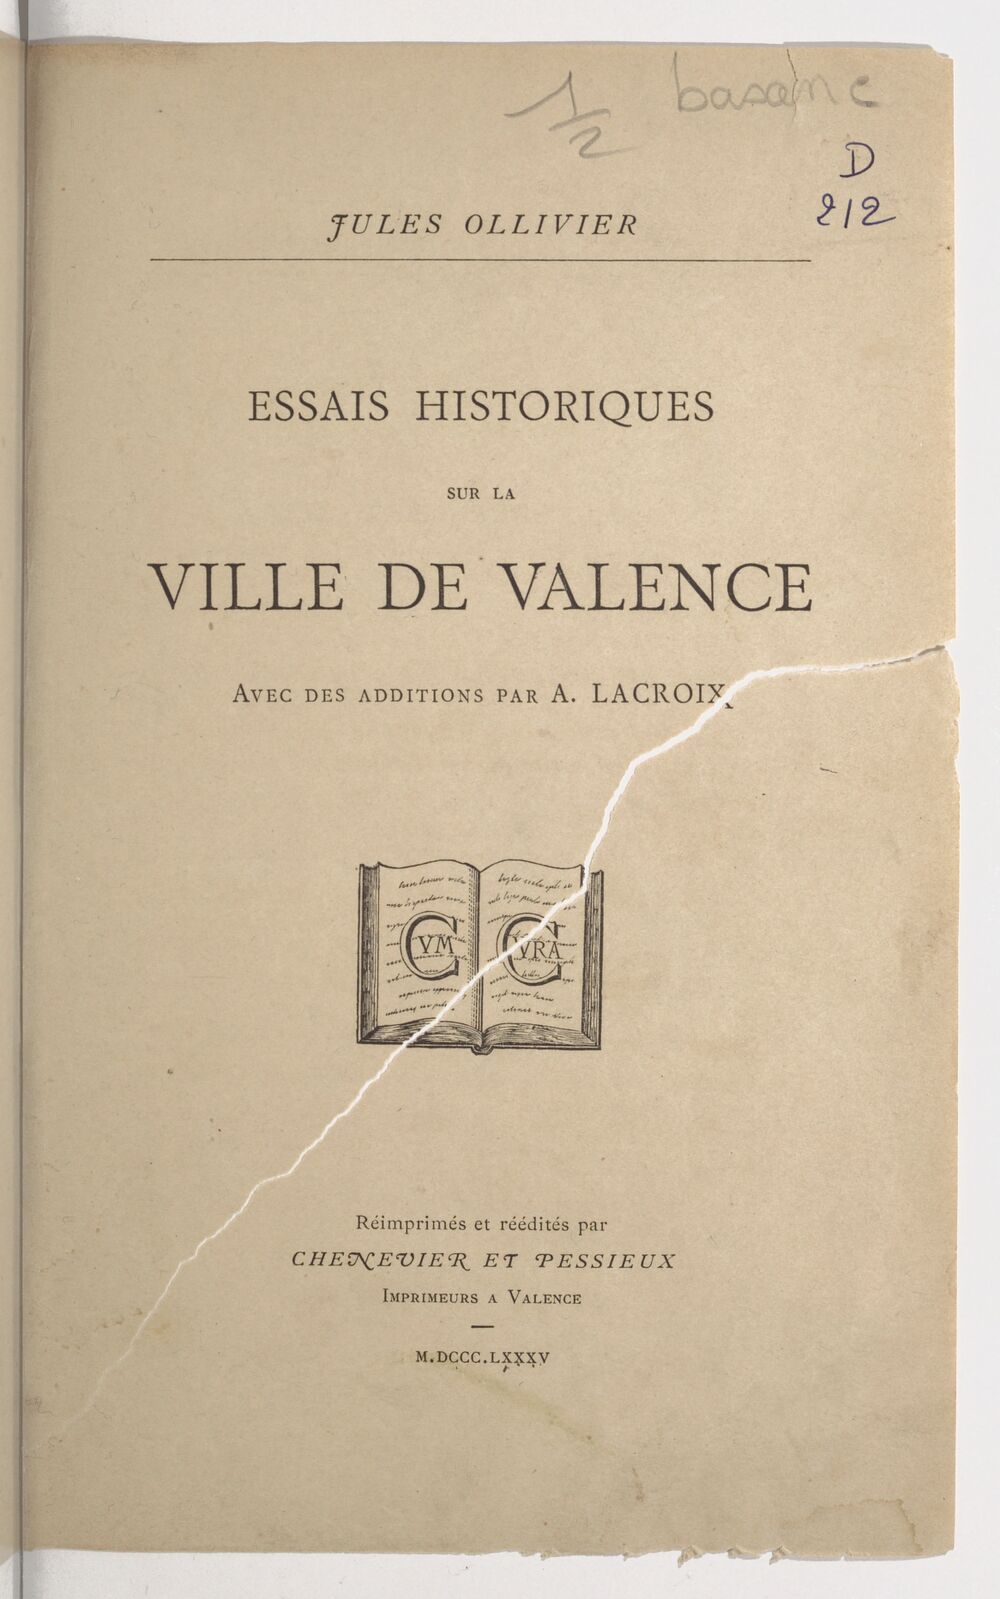 Essais historiques sur la ville de Valence / Jules Ollivier ; avec des additions de A. Lacroix